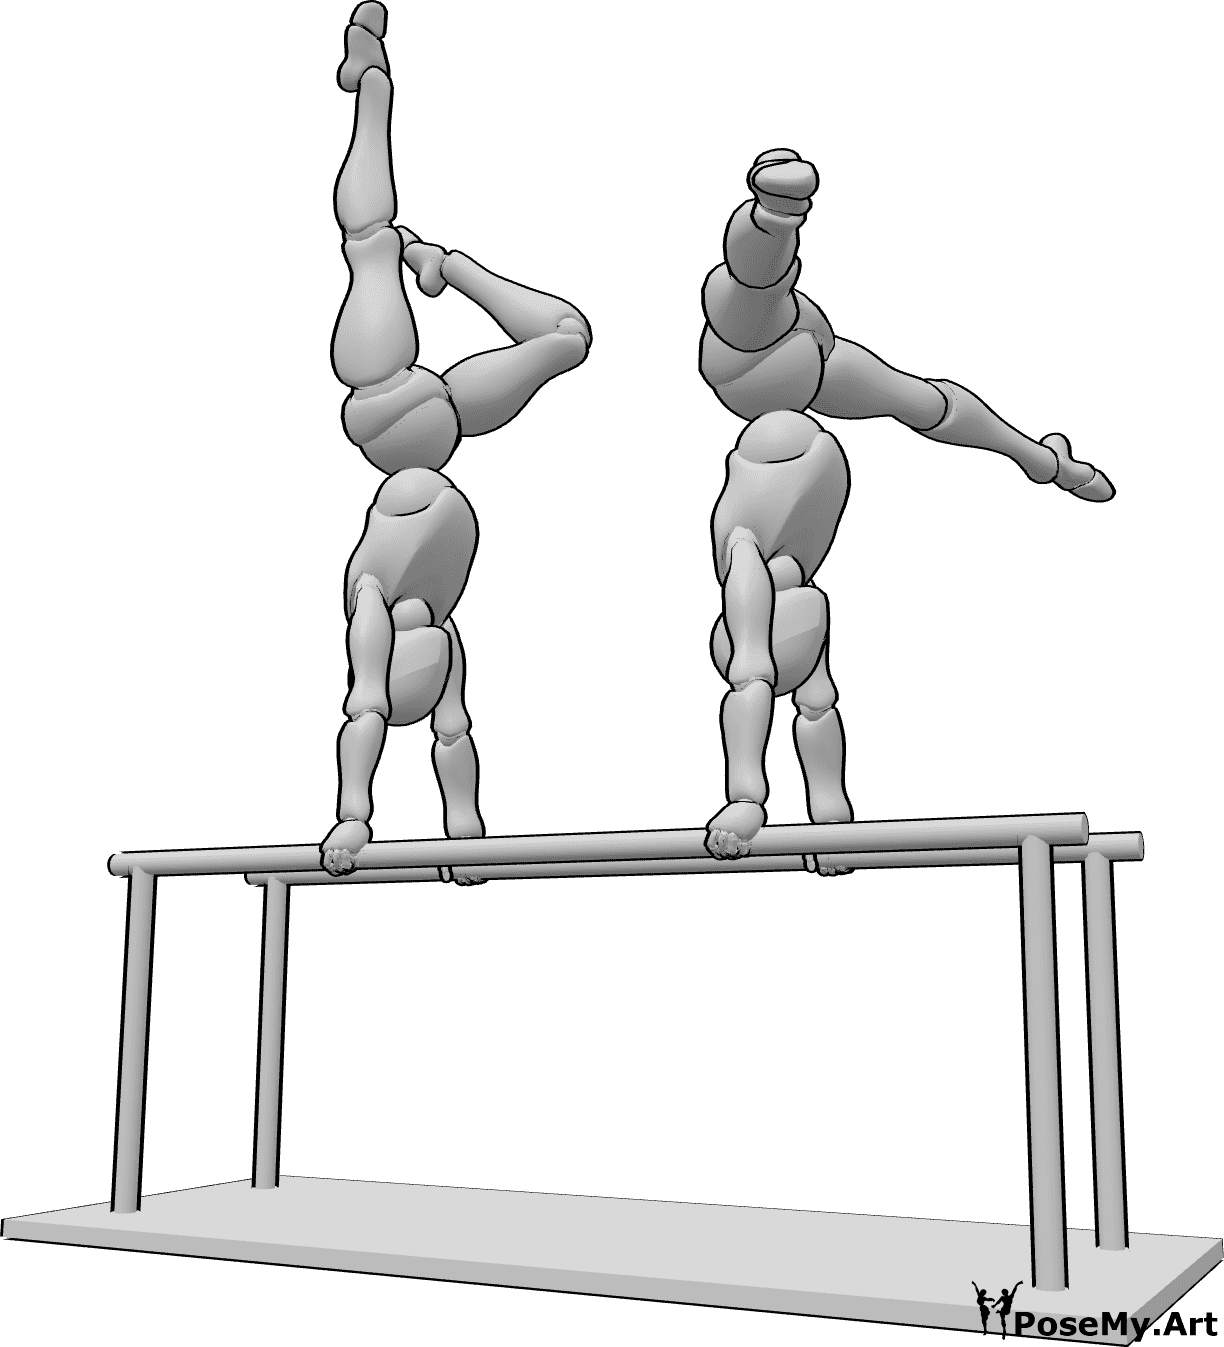 Posen-Referenz- Zwei Frauen in Gymnastik-Pose - Zwei Frauen turnen am Barren, Handstand und Beinheben